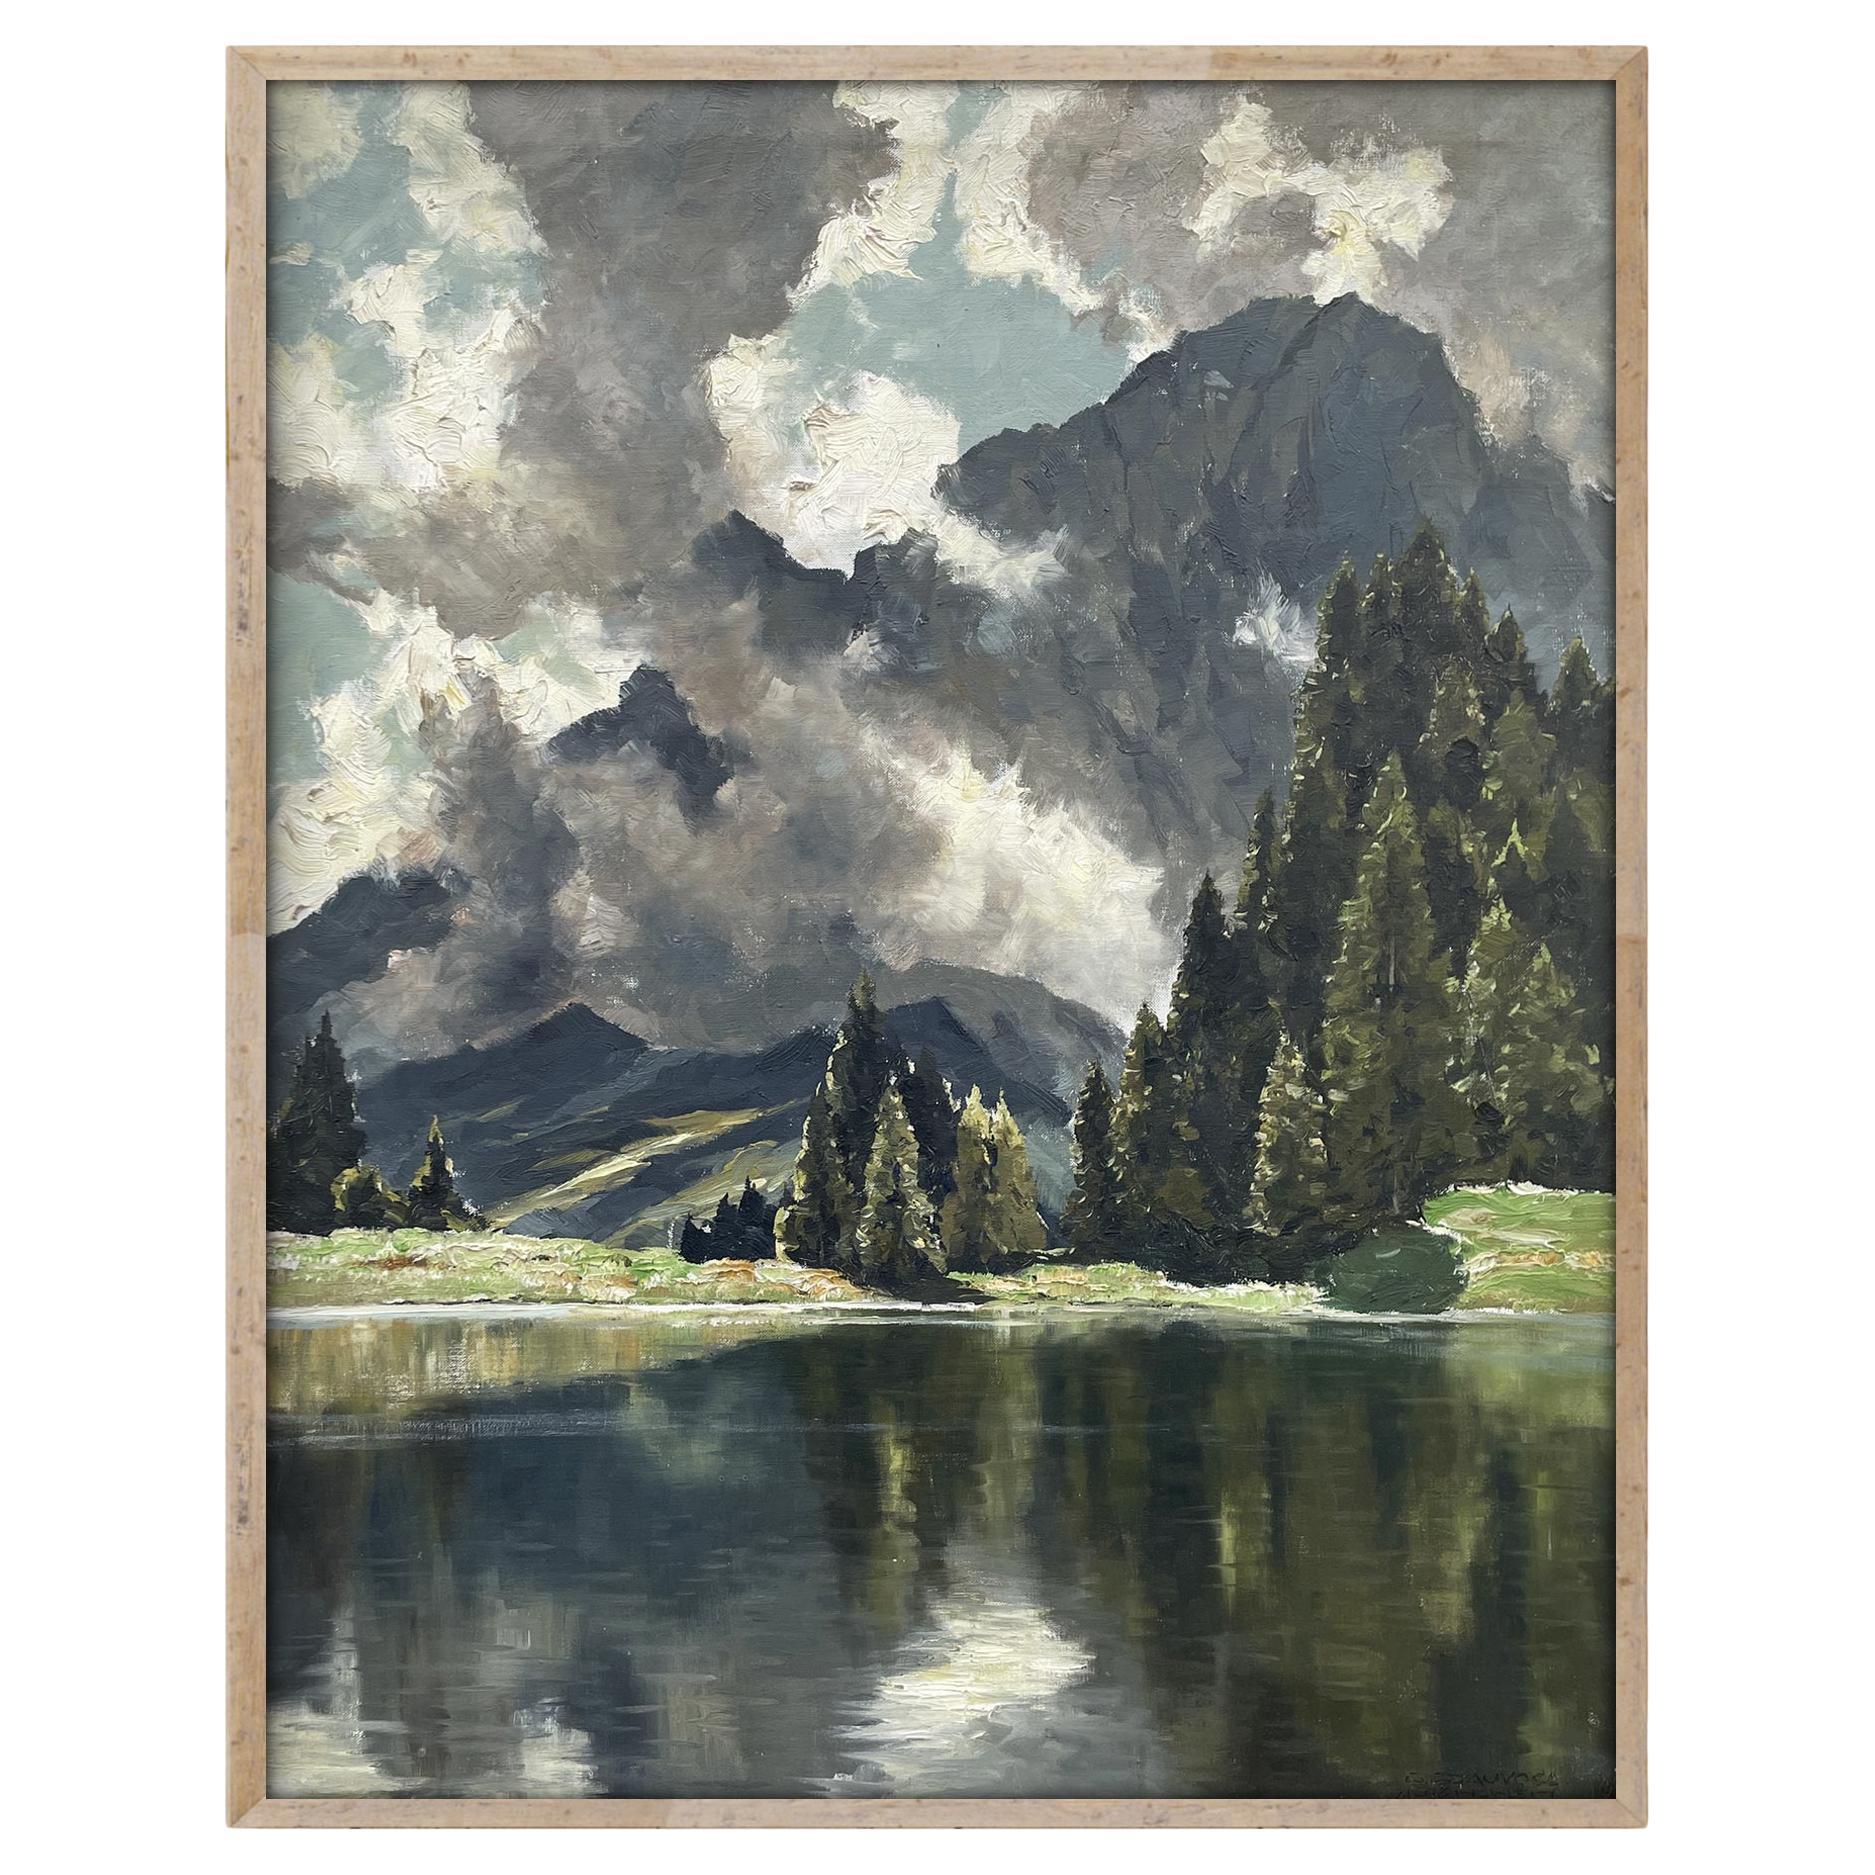 Huile sur toile de Georg Grauvogl, vue du lac Limides, Dolomites italiennes 